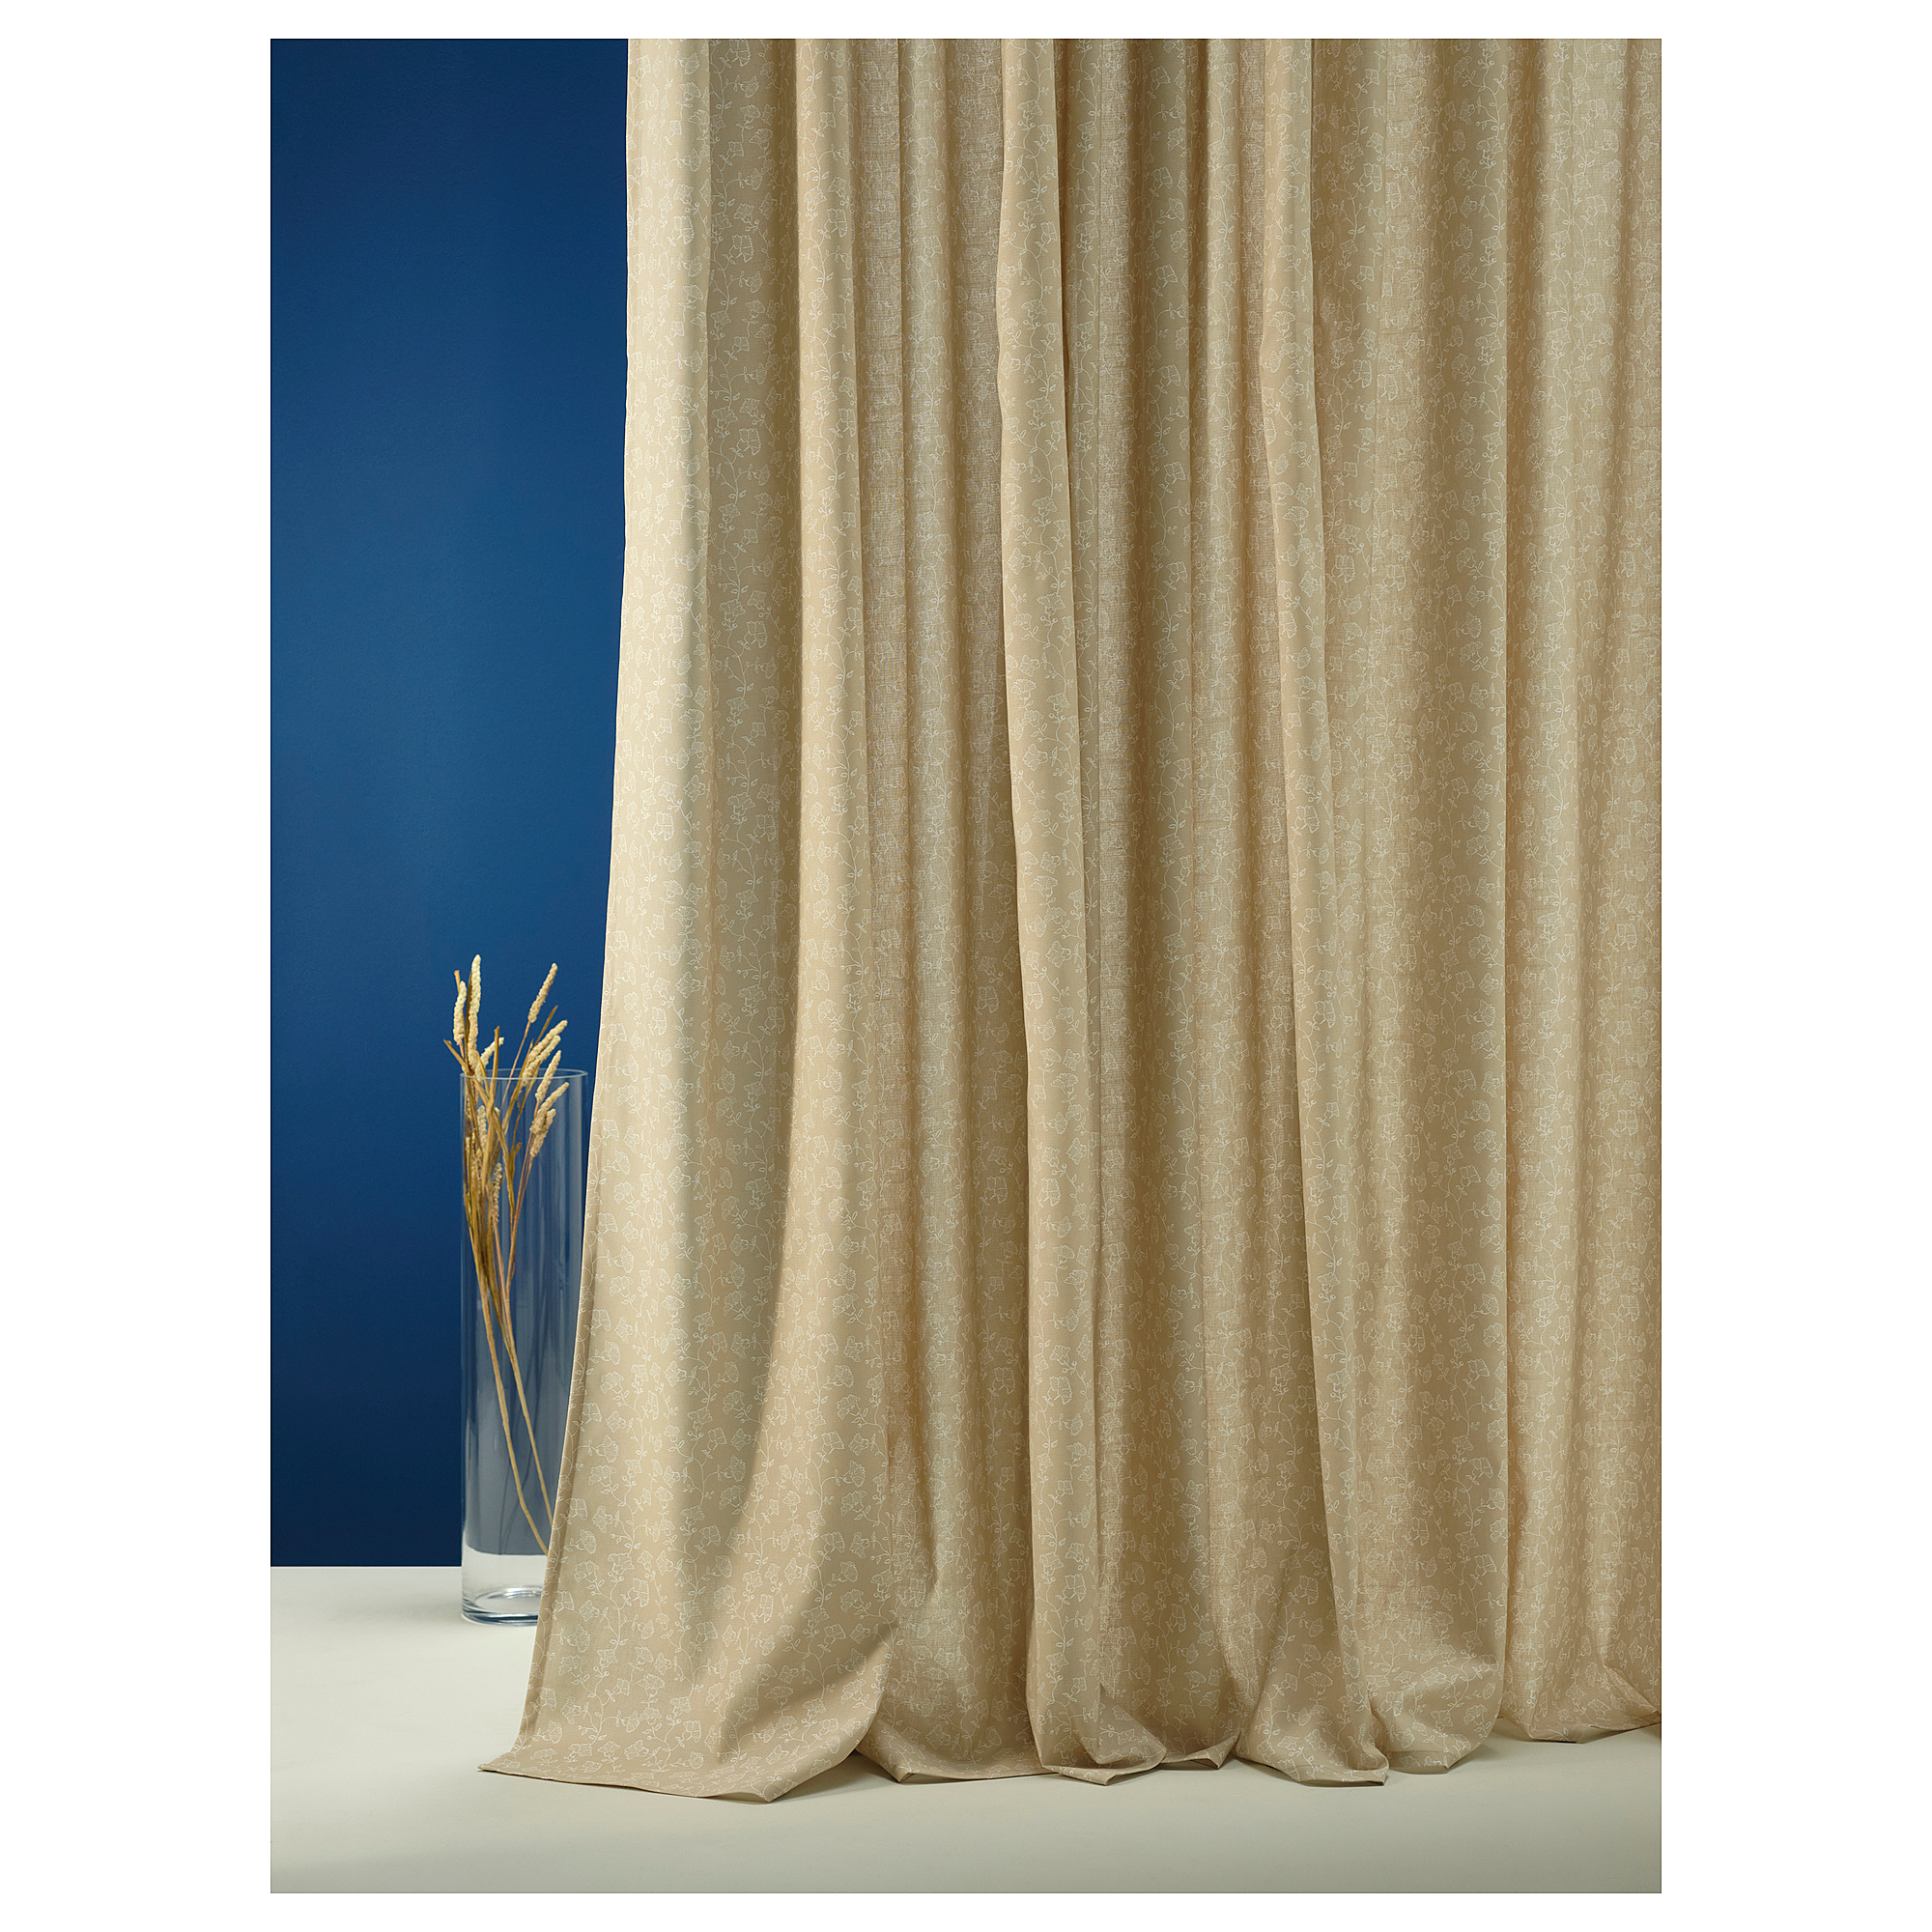 TRYSTÄVMAL curtains, 1 pair